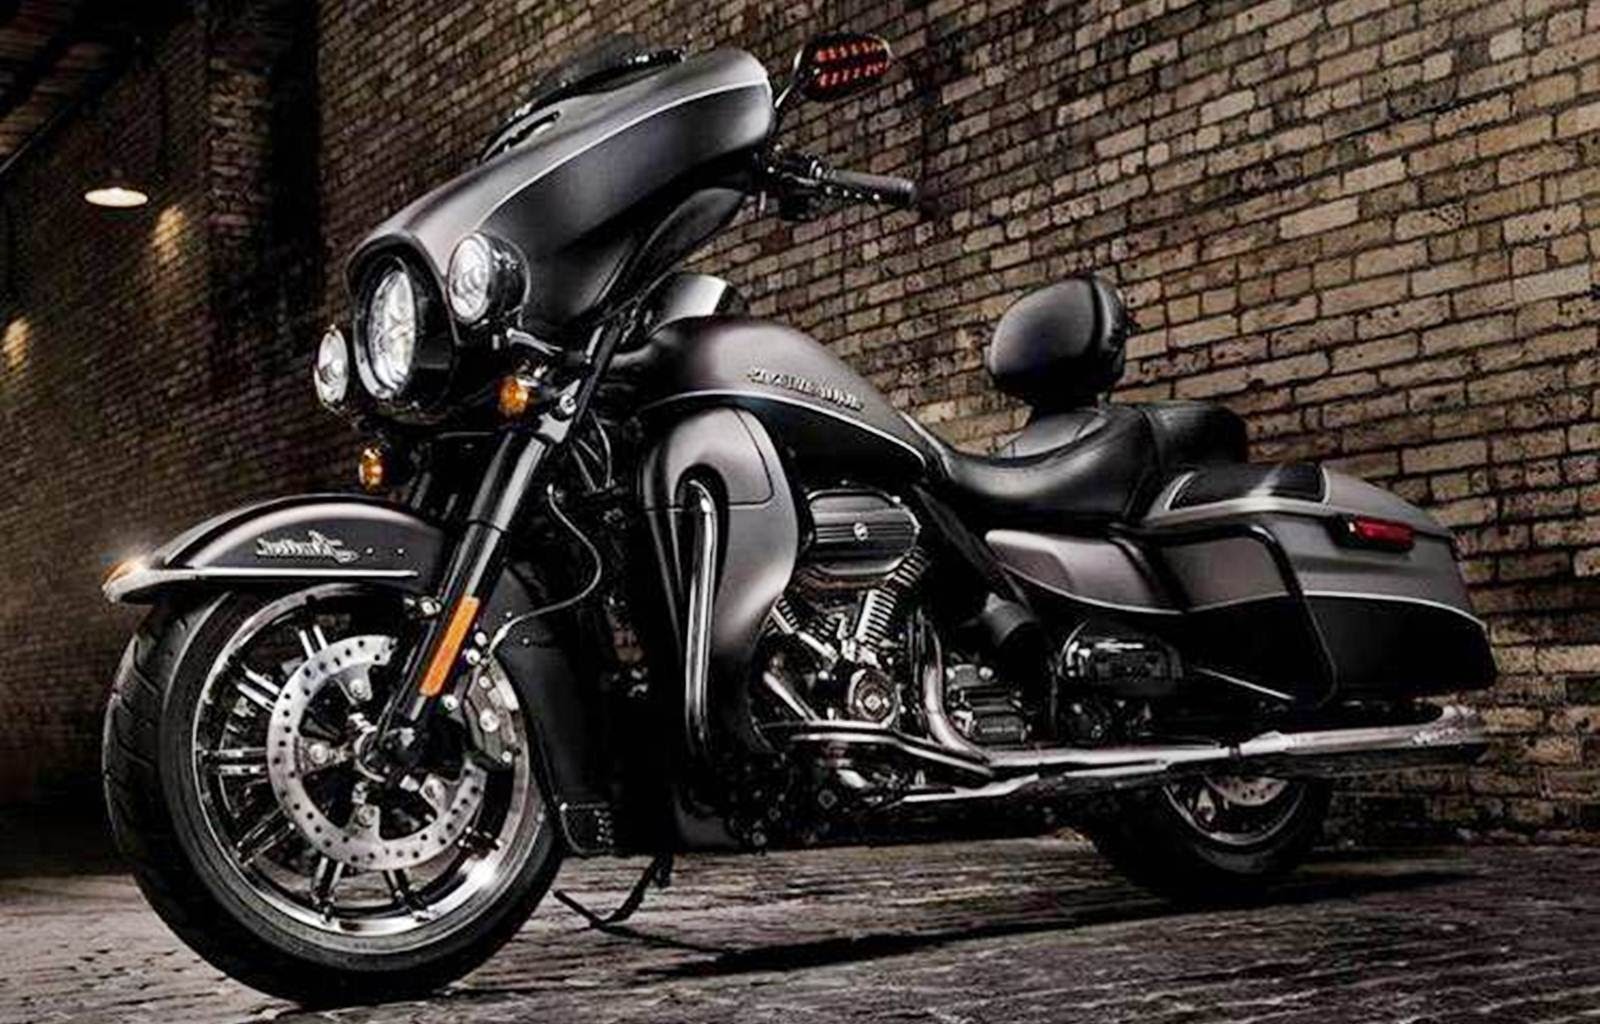 10 Gambar Wallpaper Motor Harley Davidson Ukuran 1600x1024 Terbaru